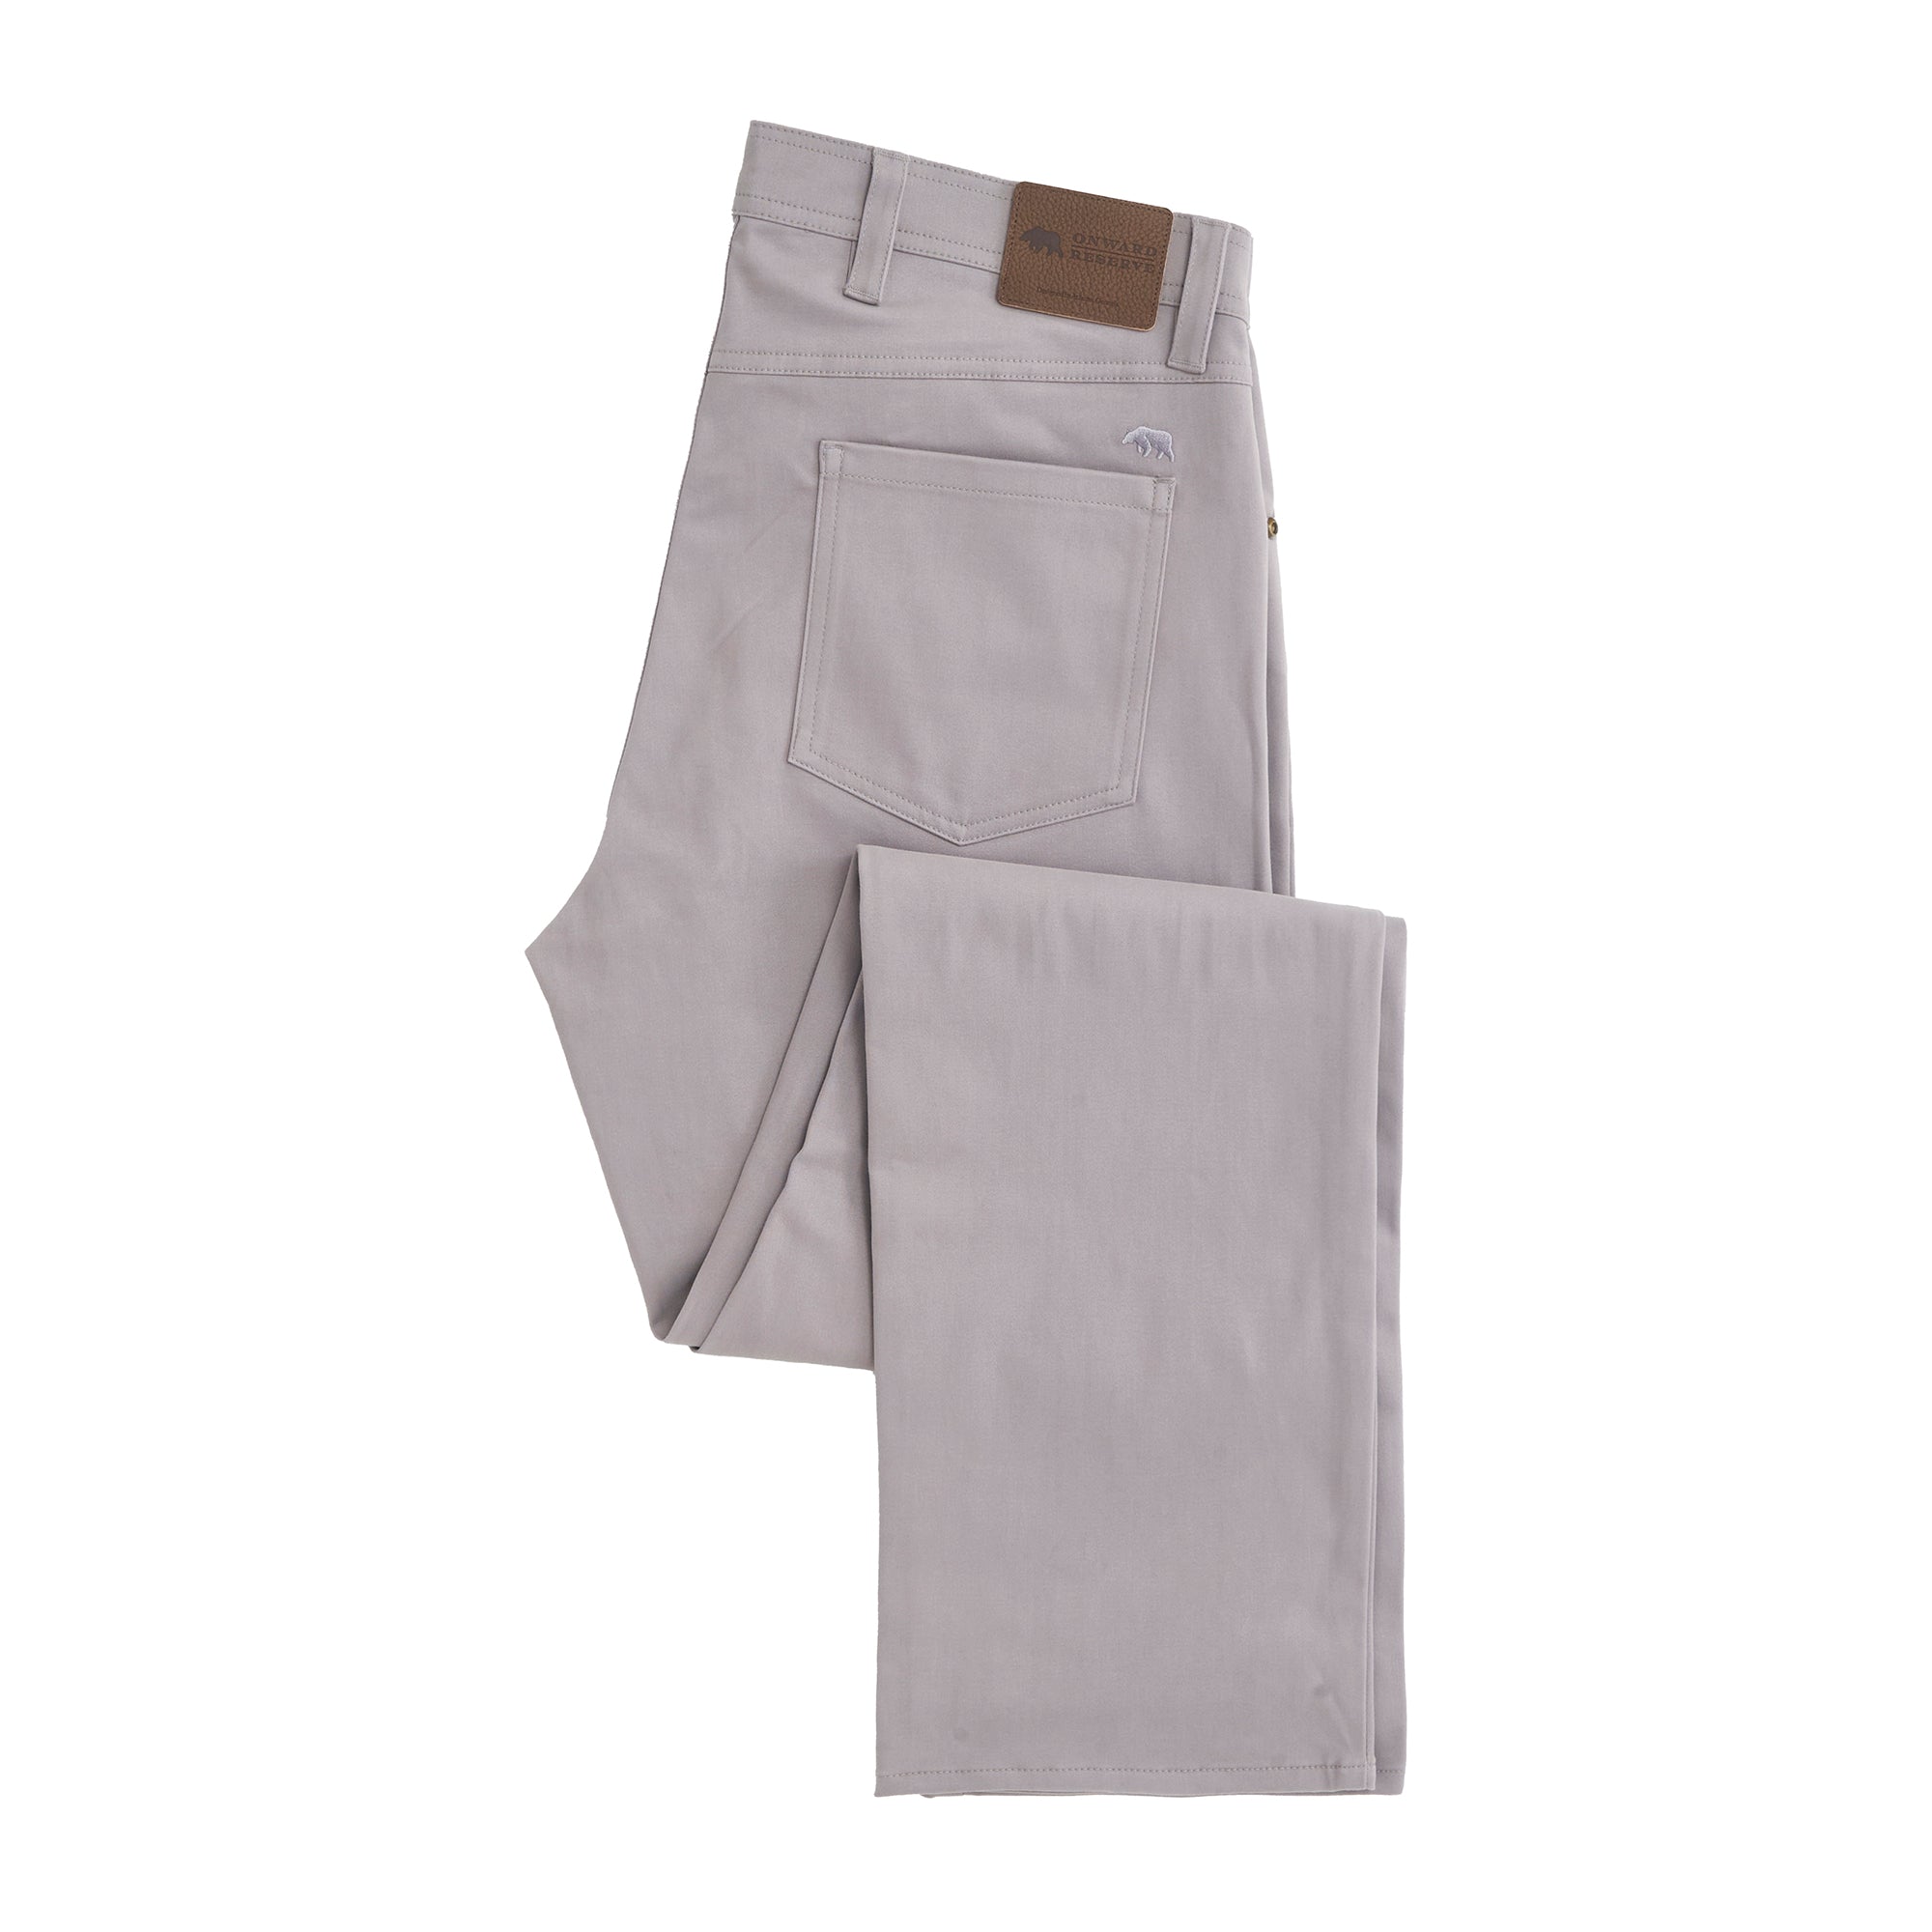 Cosecha Pants Pattern - Sew Liberated